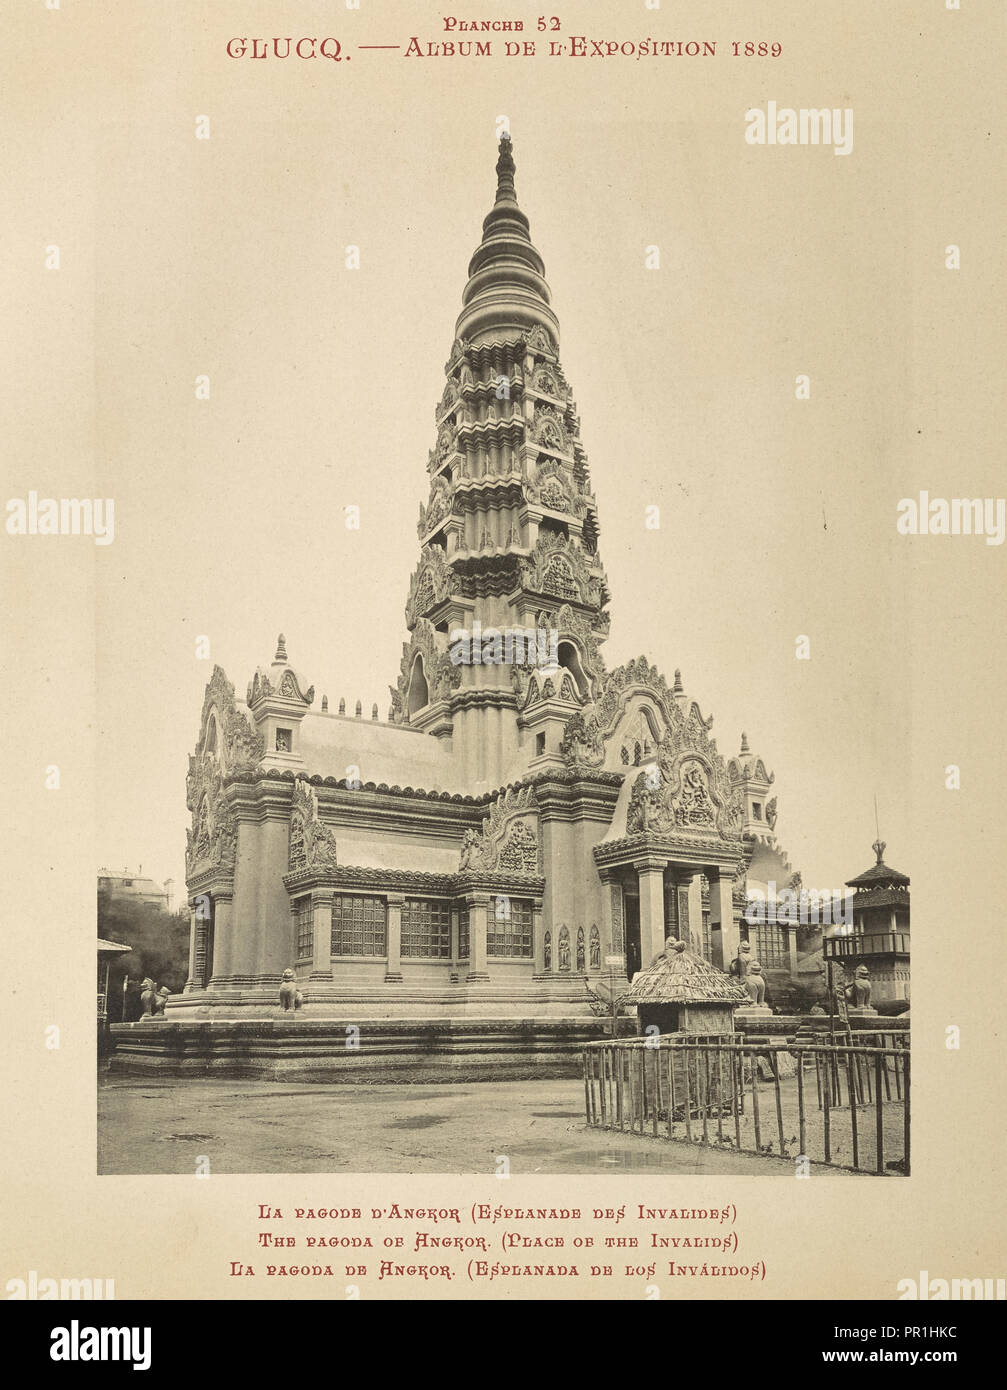 La pagode d'Angkor, l'album de l'exposition de 1889, Glücq, 1889 Banque D'Images